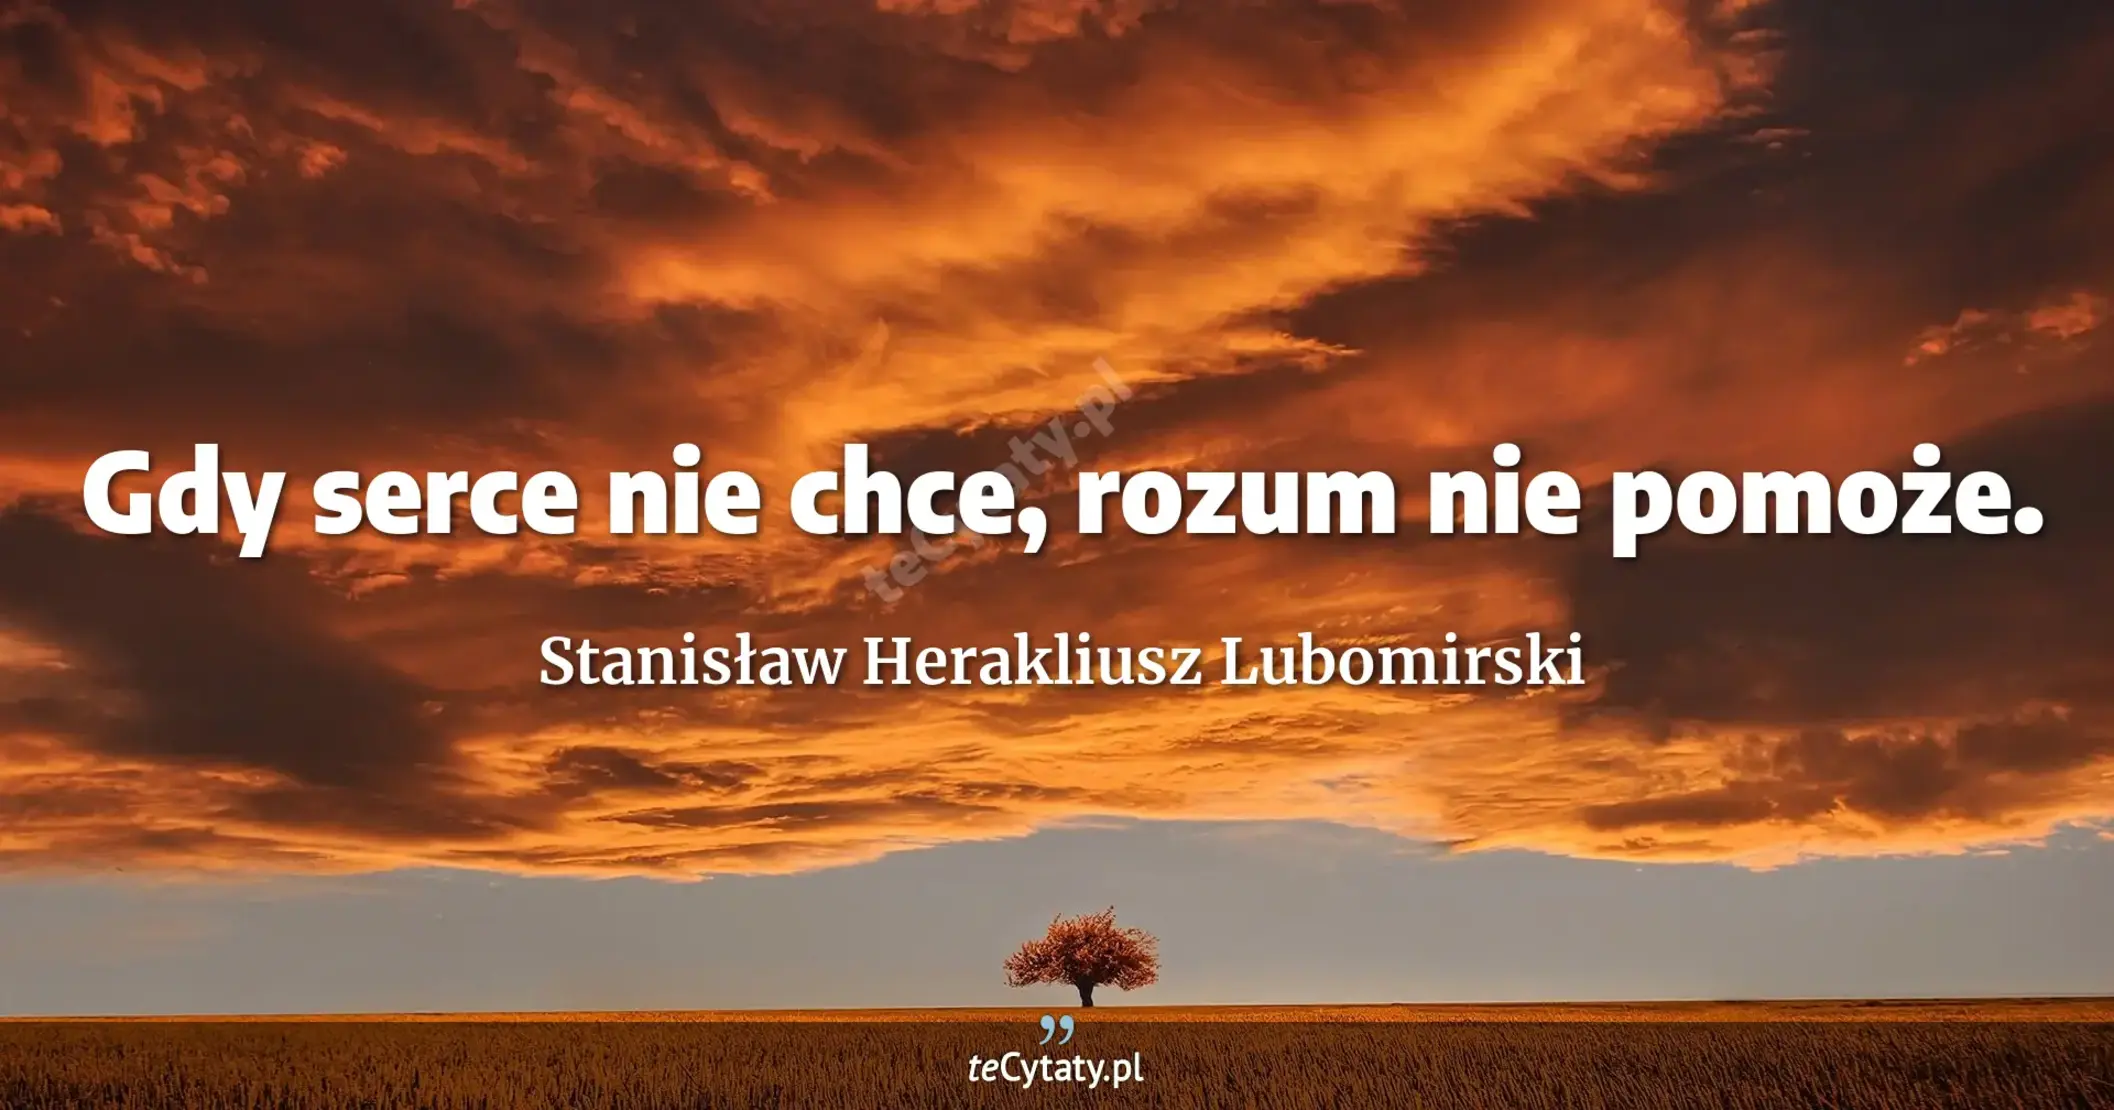 Gdy serce nie chce, rozum nie pomoże. - Stanisław Herakliusz Lubomirski